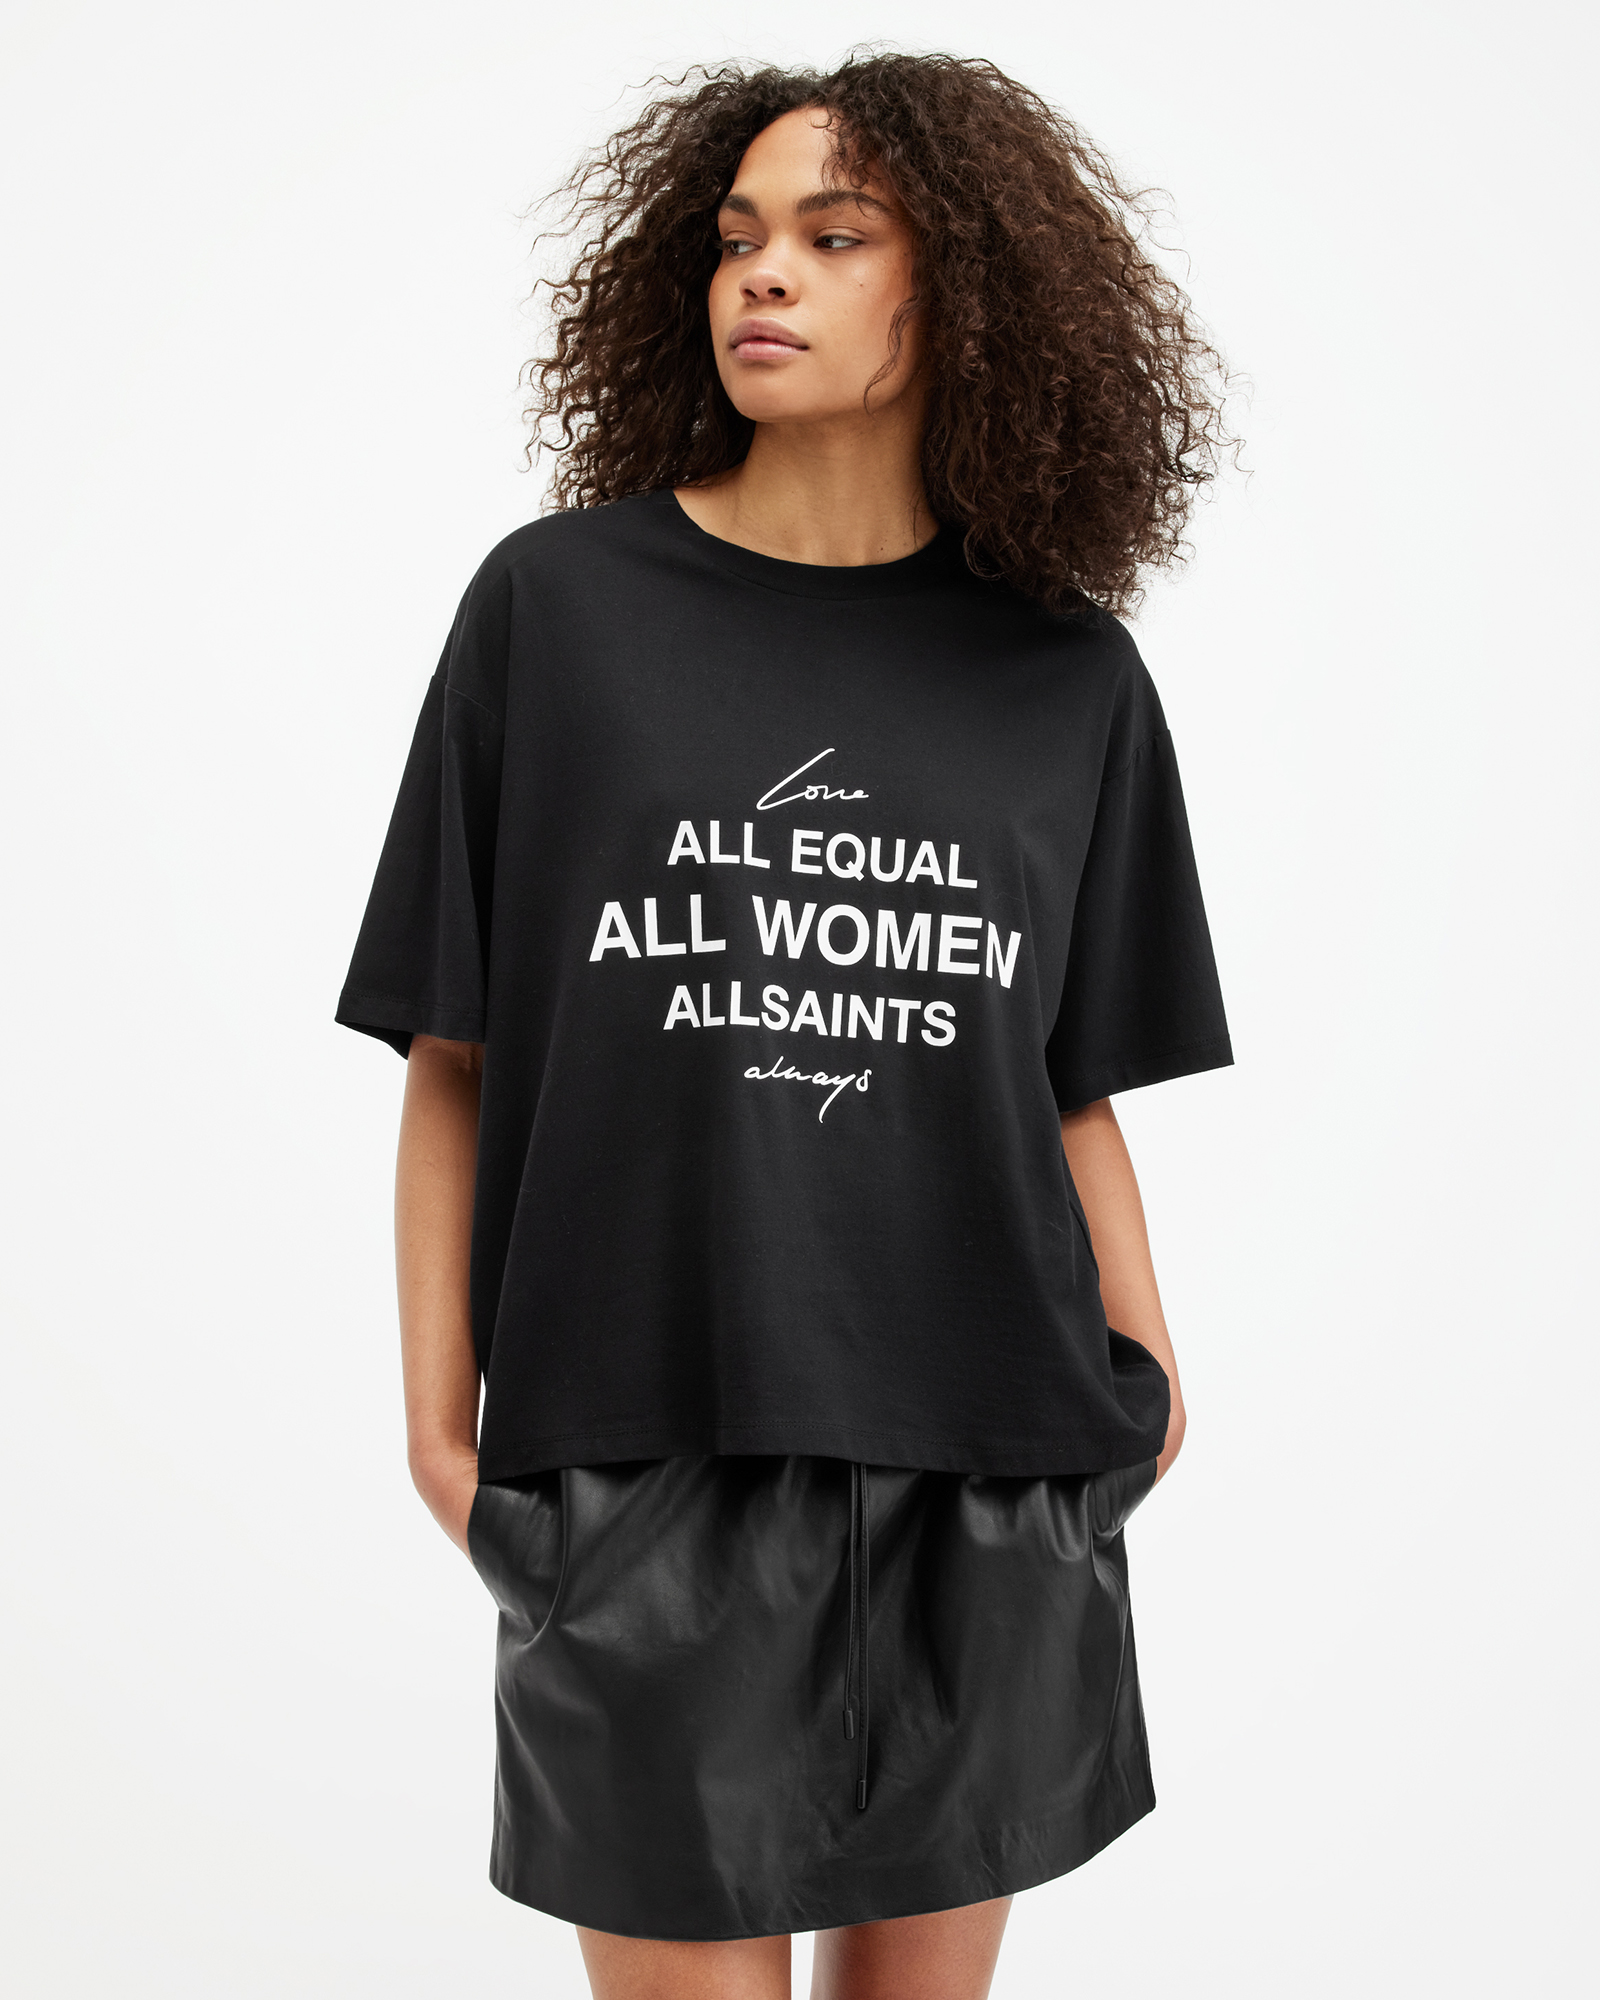 AllSaints International Women's Day Carlie T-Shirt